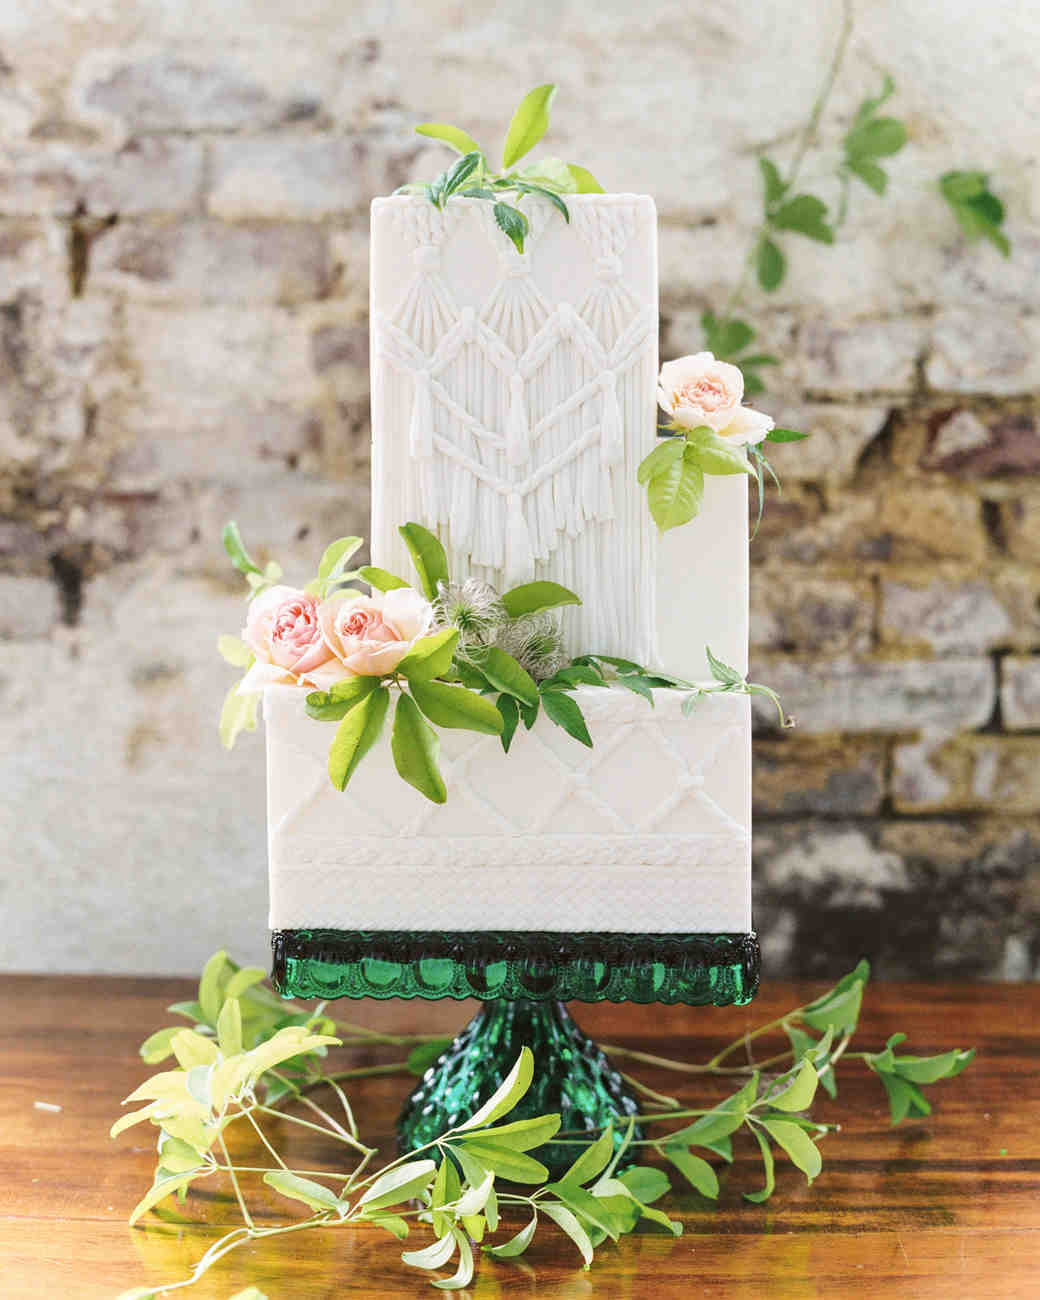 Кубичные свадебные торты для вашего современного десерта